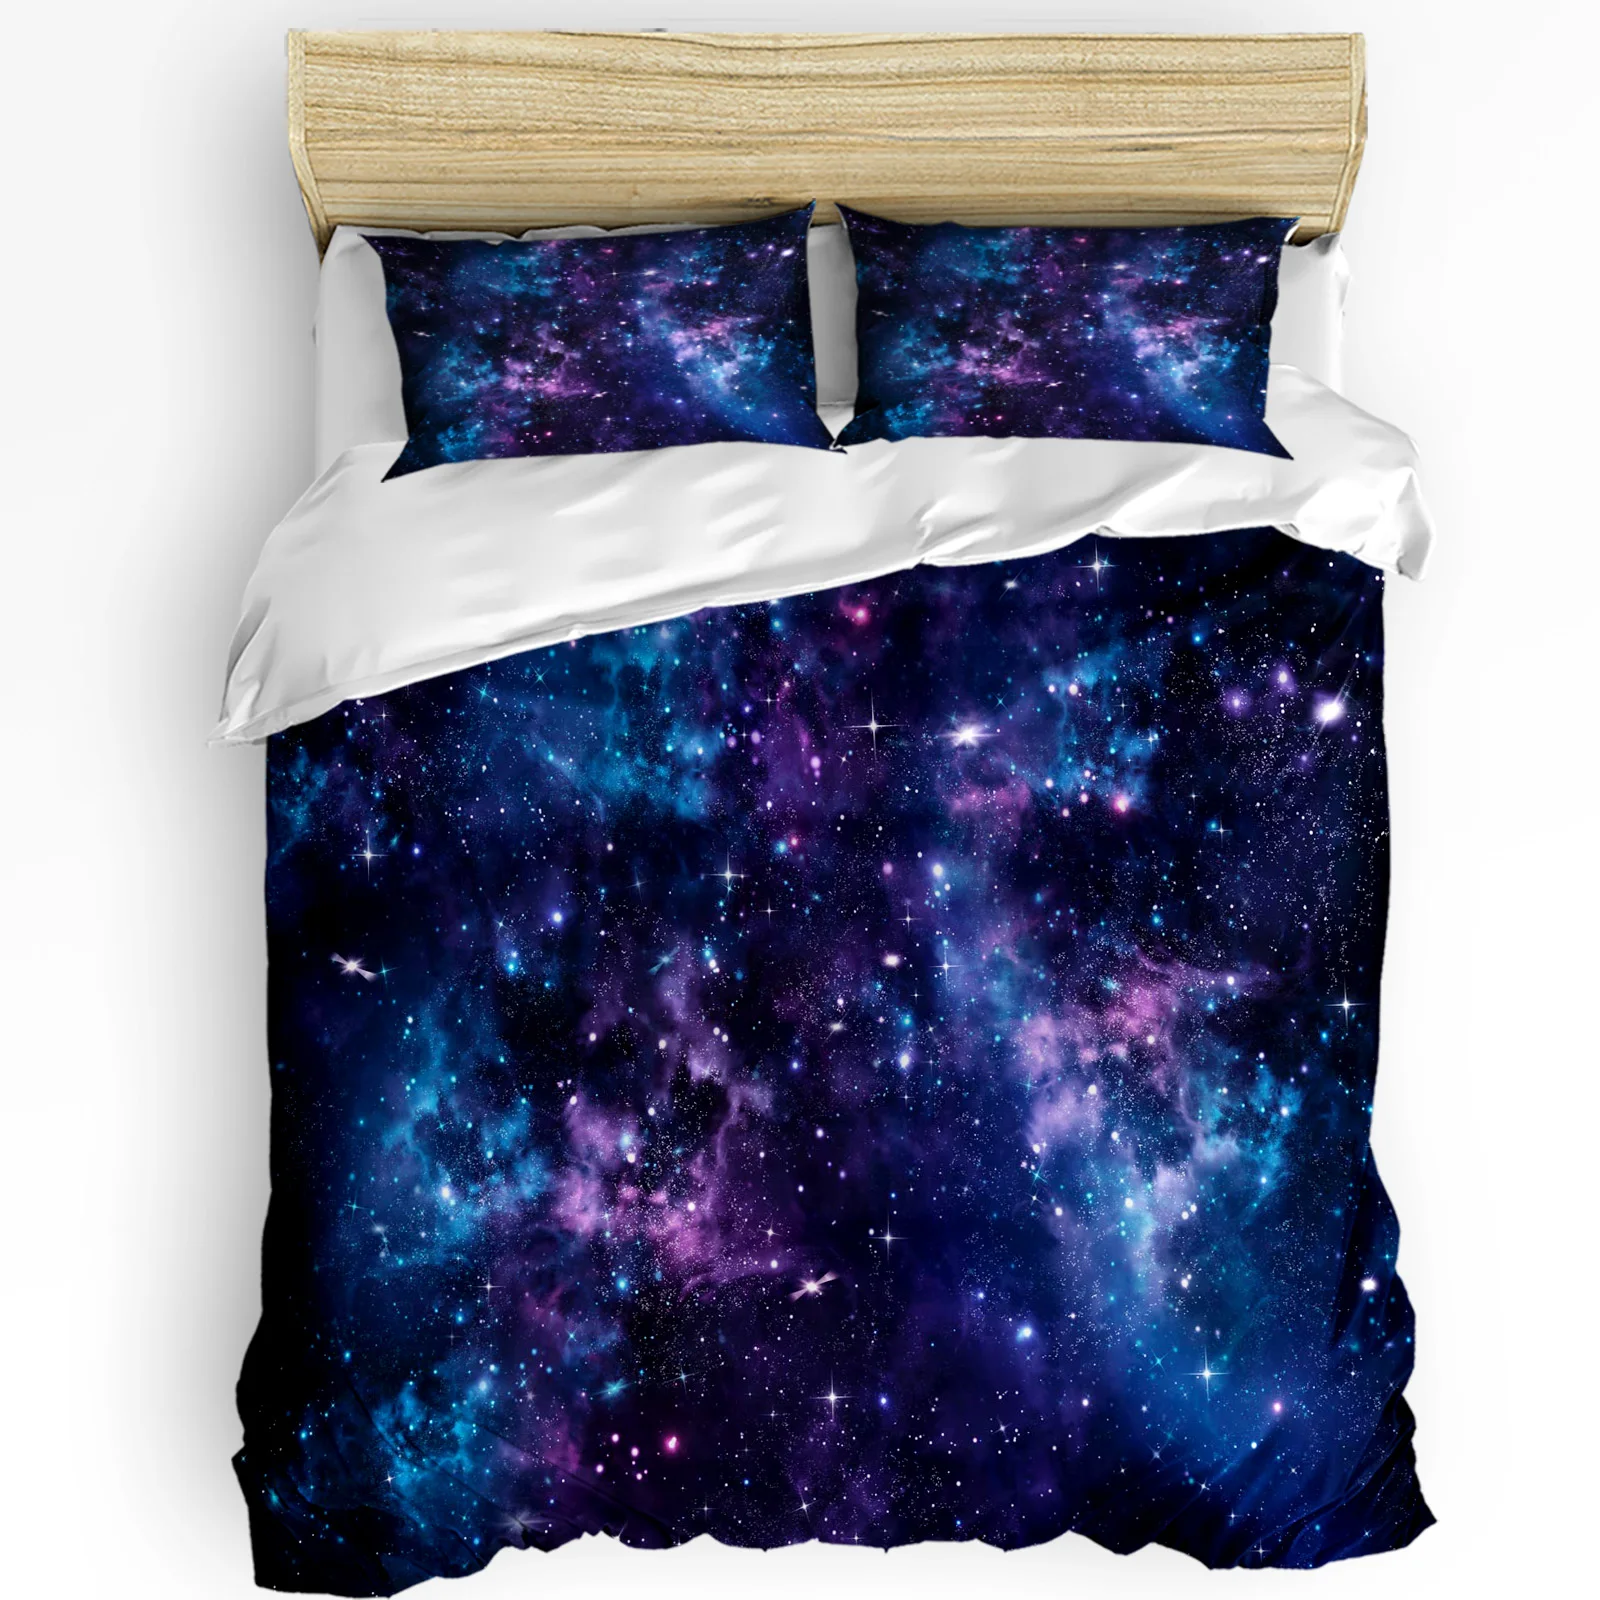 

Blue Starry Sky Purple Milky Way Bedding Set 3pcs Duvet Cover Pillowcase Kids Adult Quilt Cover Double Bed Set Home Textile